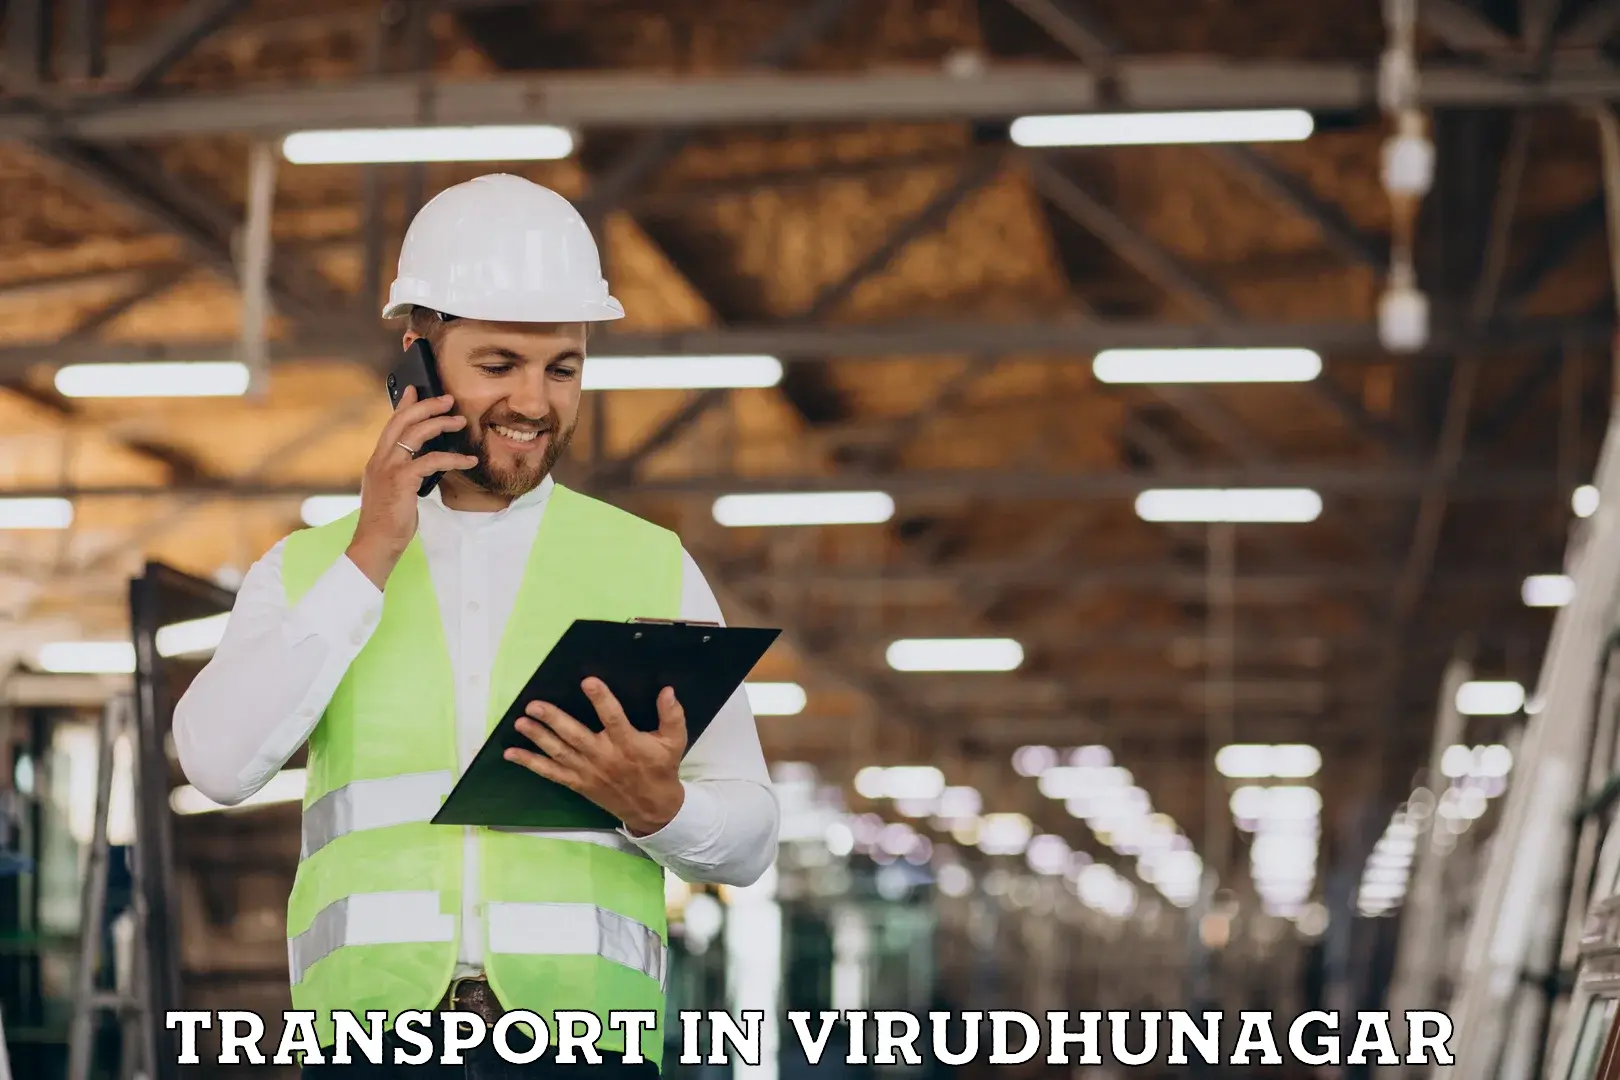 International cargo transportation services in Virudhunagar